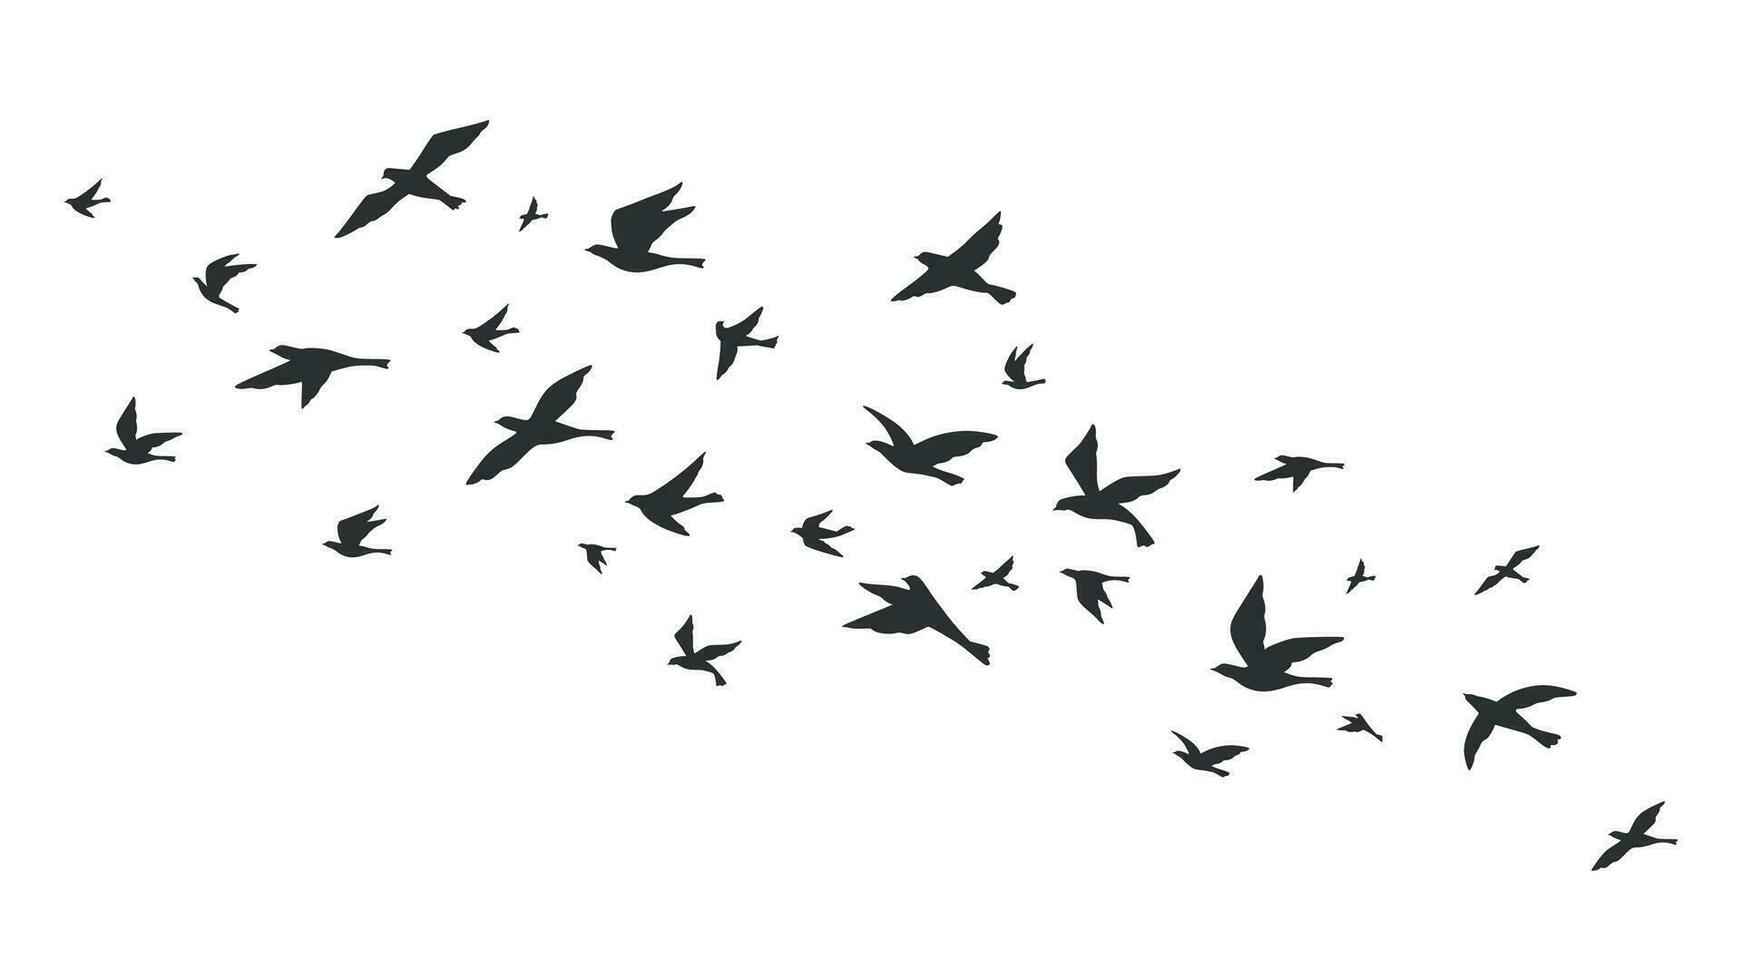 vliegend vogel. vrij vogelstand kudde in vlucht zwart silhouetten. tatoeëren afbeelding, vrijheid symbool dieren in het wild vector illustratie